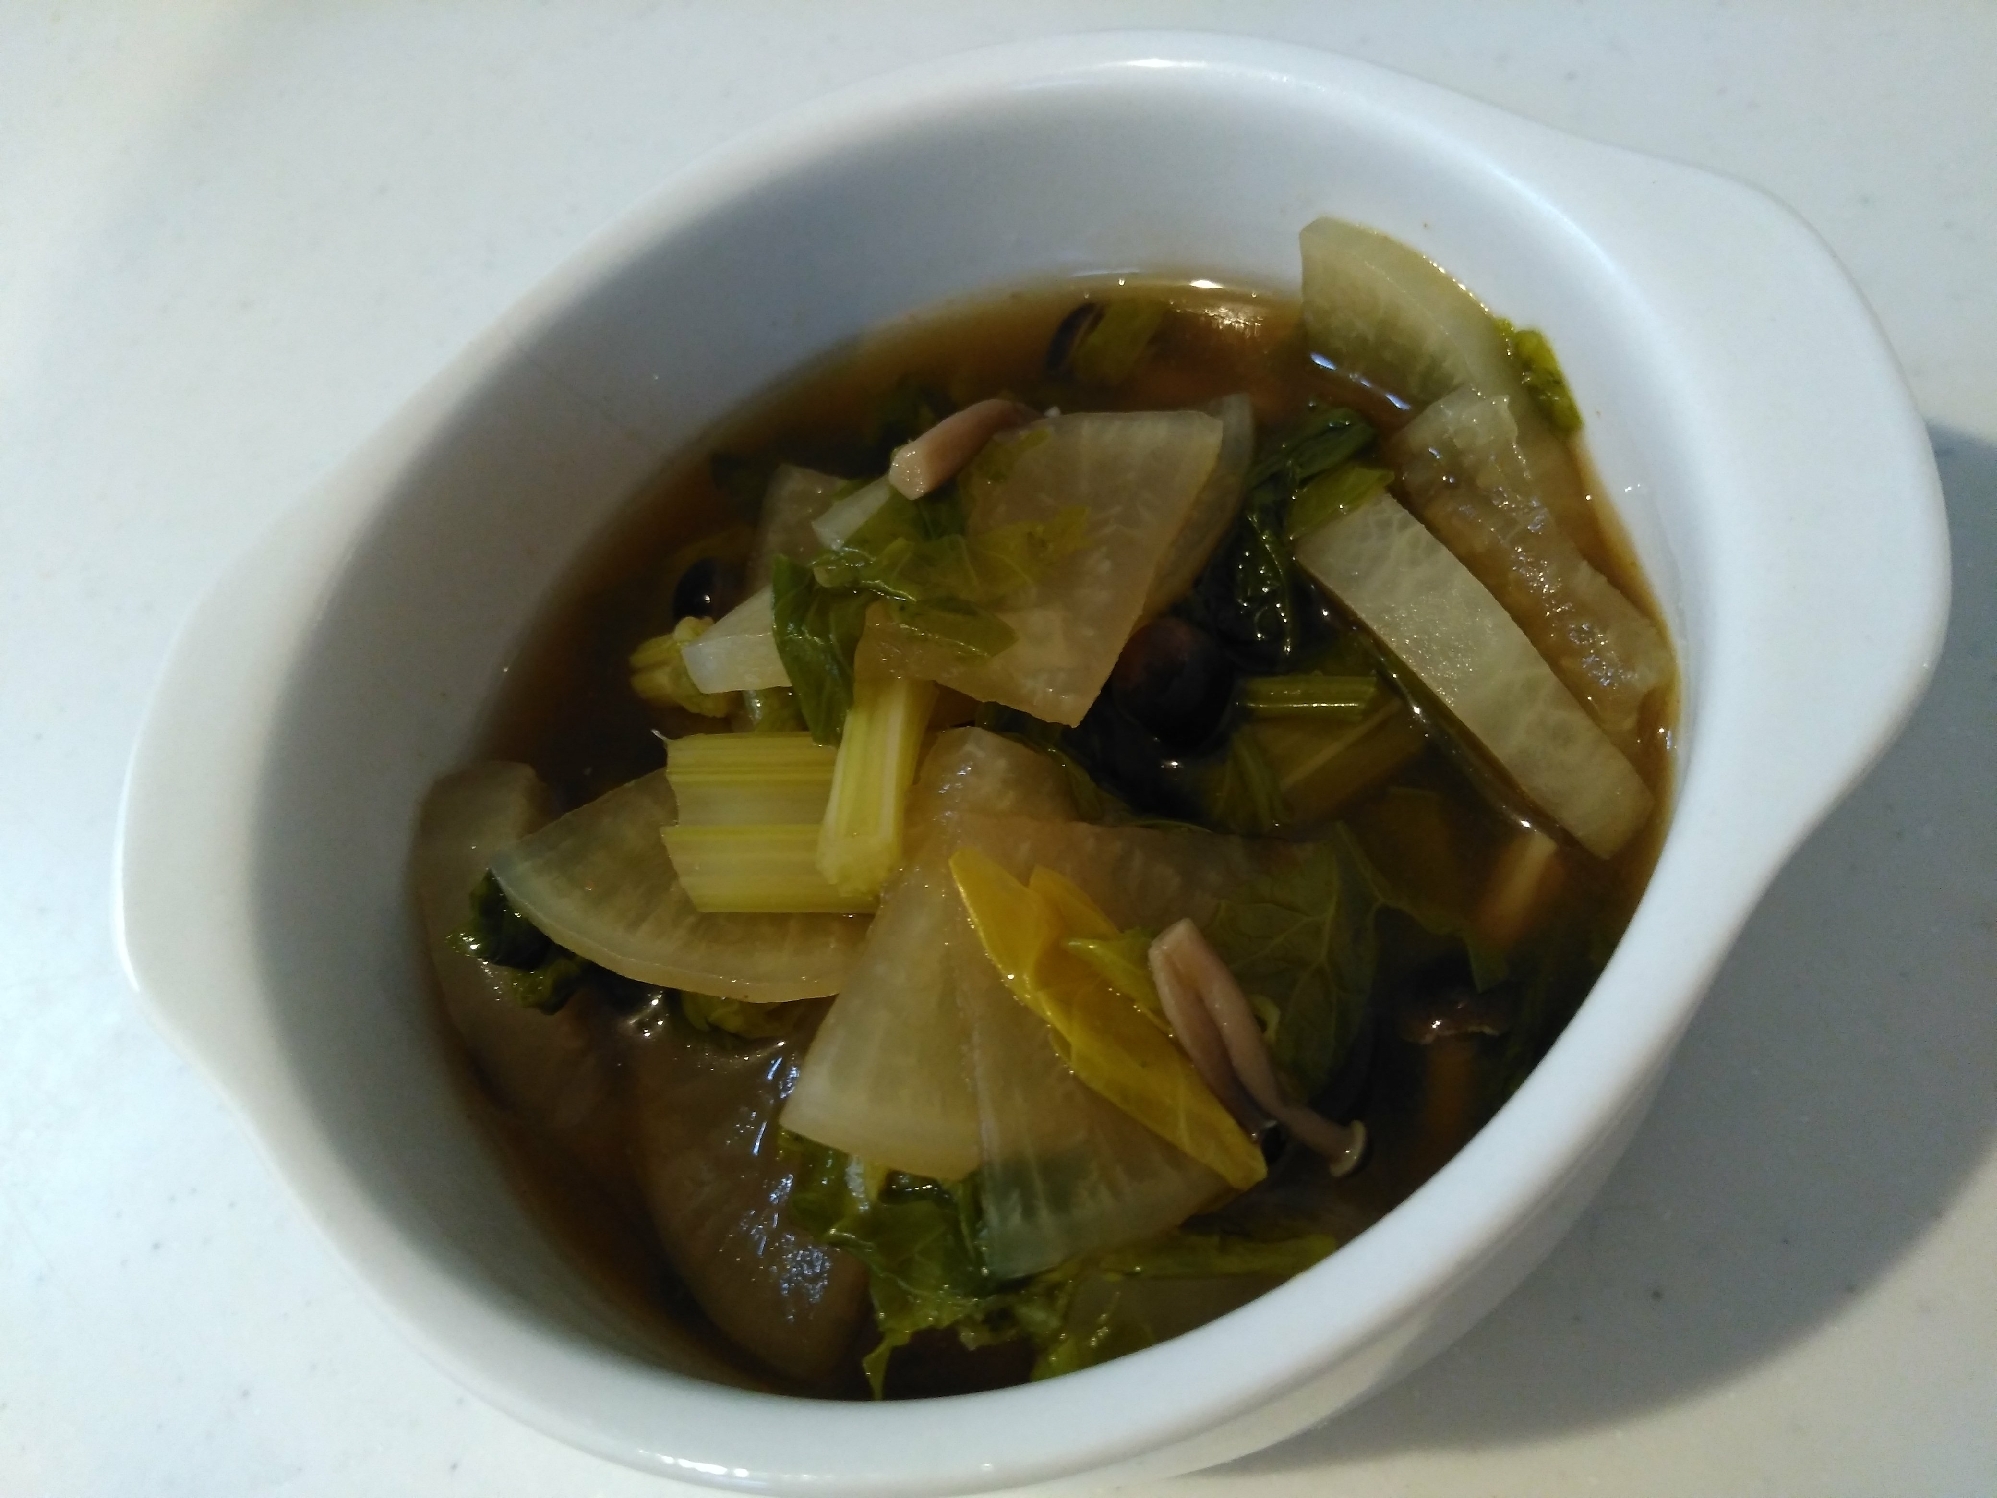 タイ料理風♫「セロリと大根の旨辛スープ」★